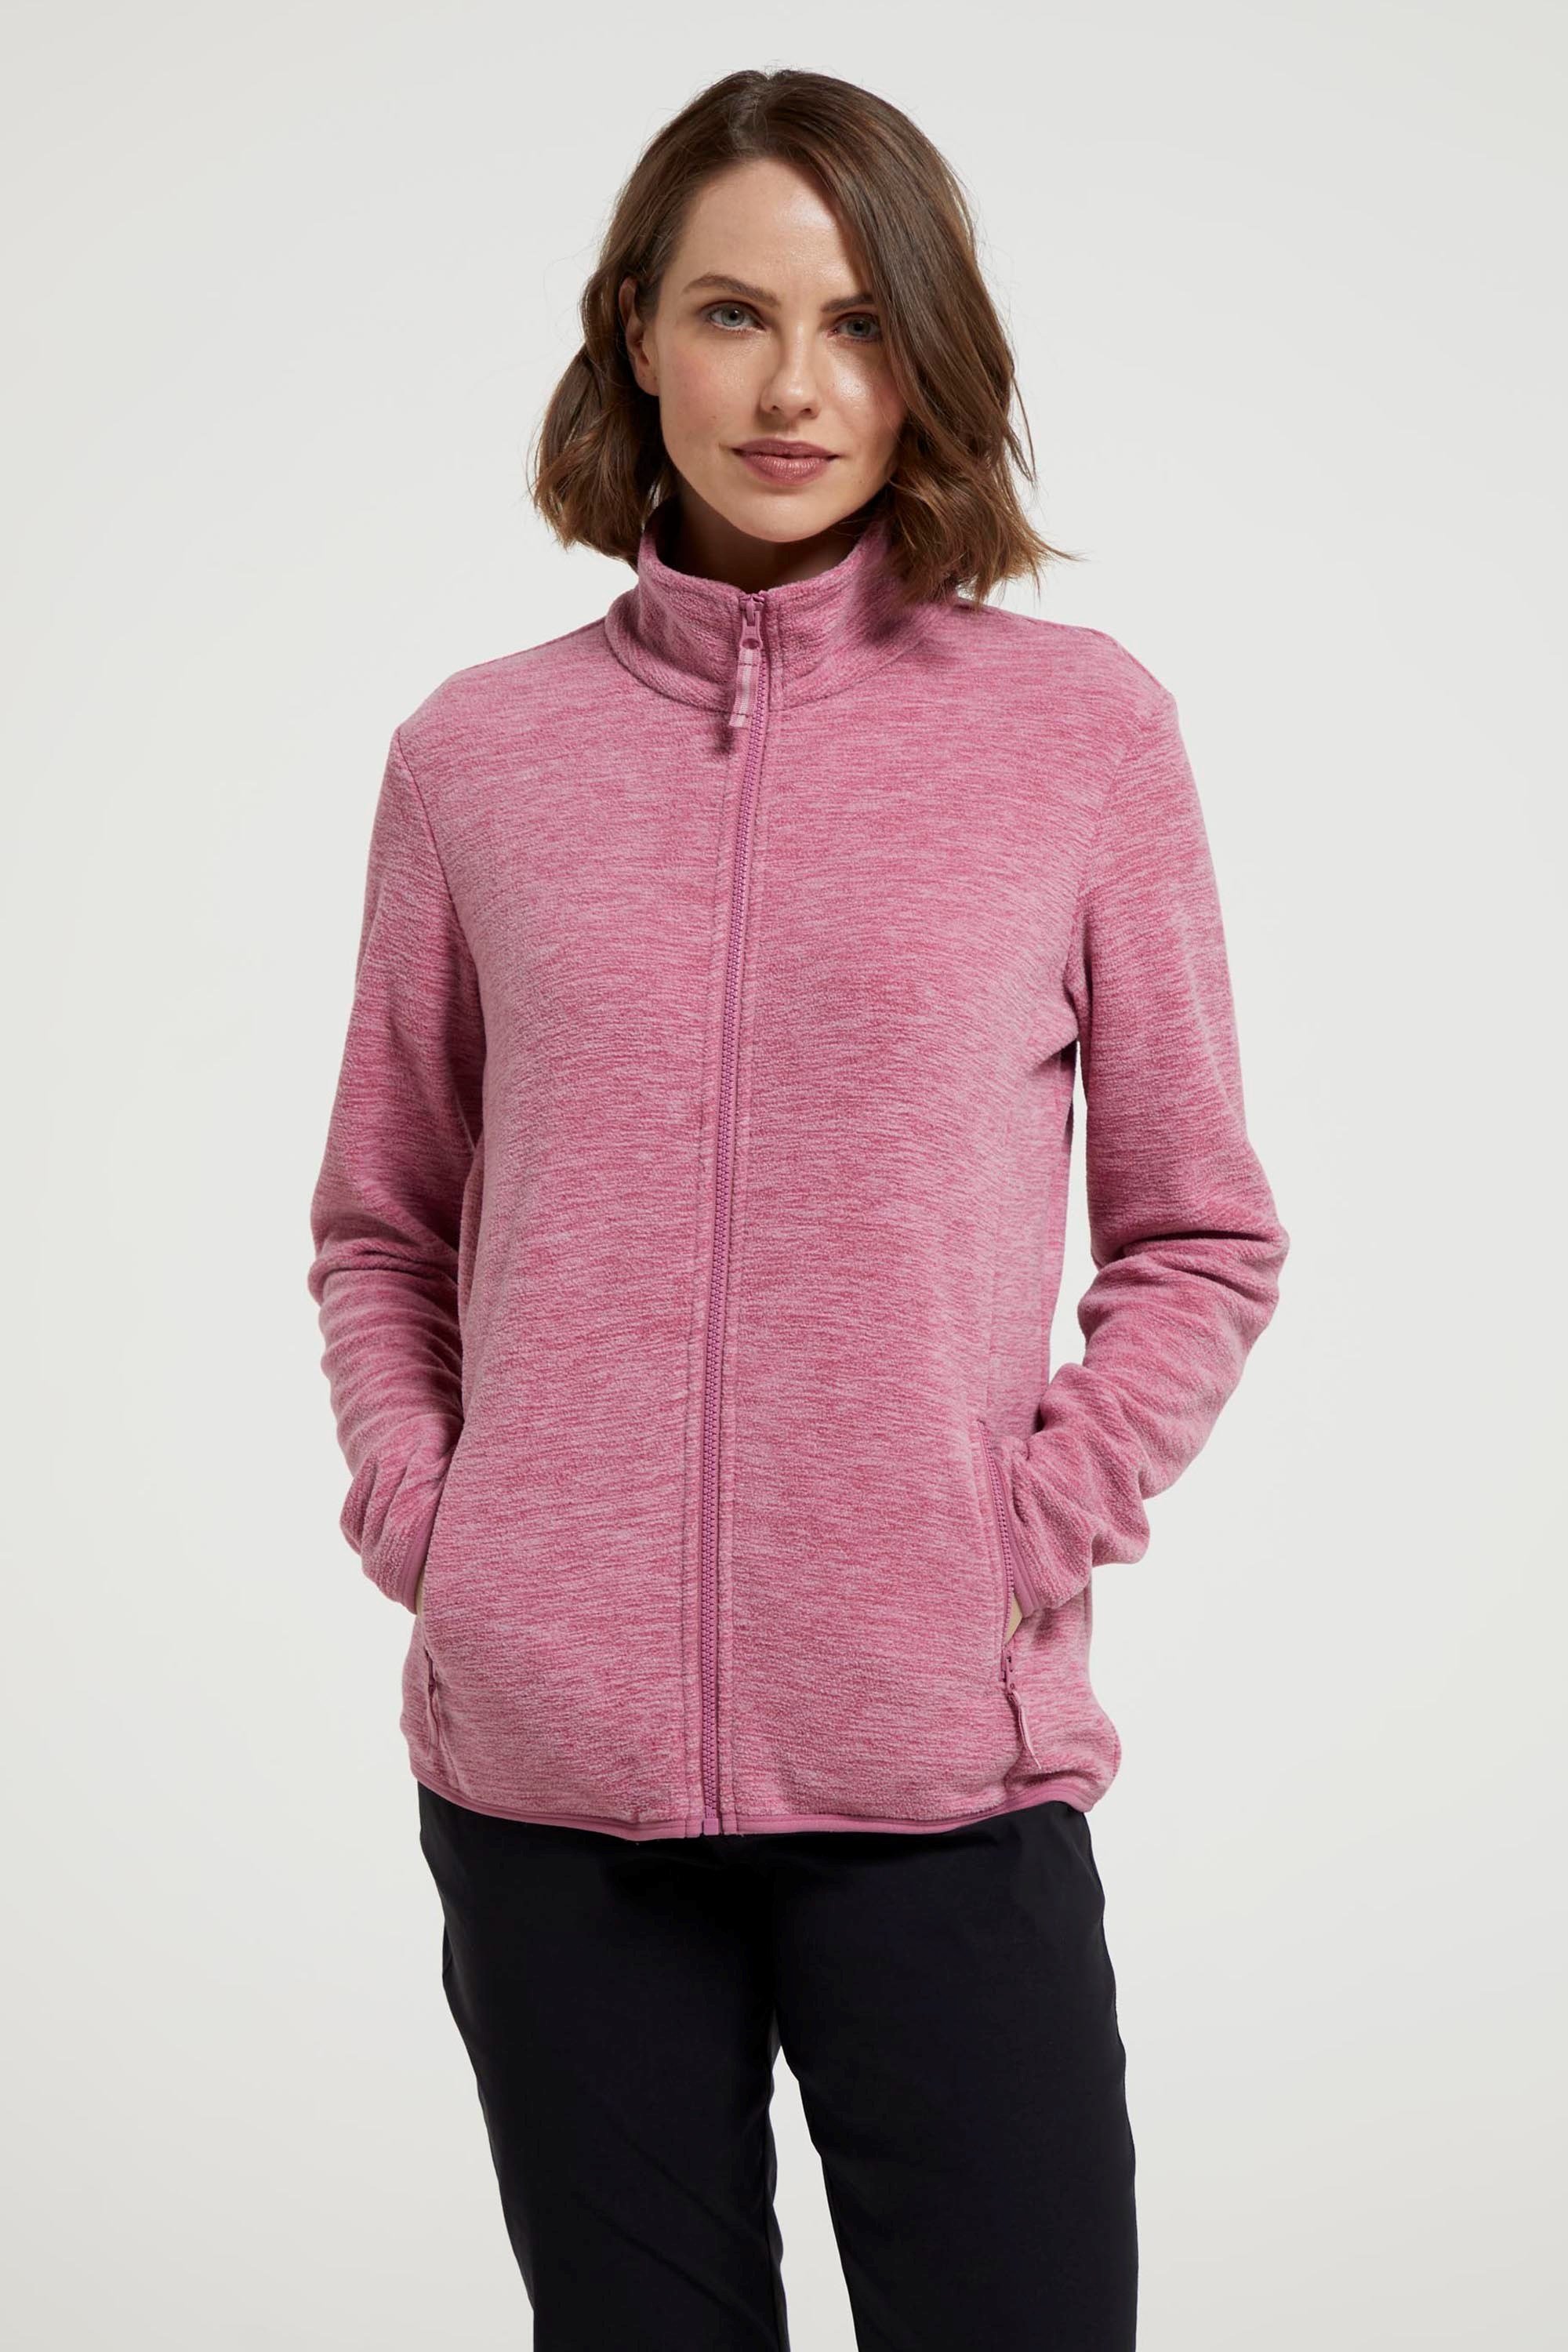 Snowdon Melange II Womens Full-Zip Fleece - Pink